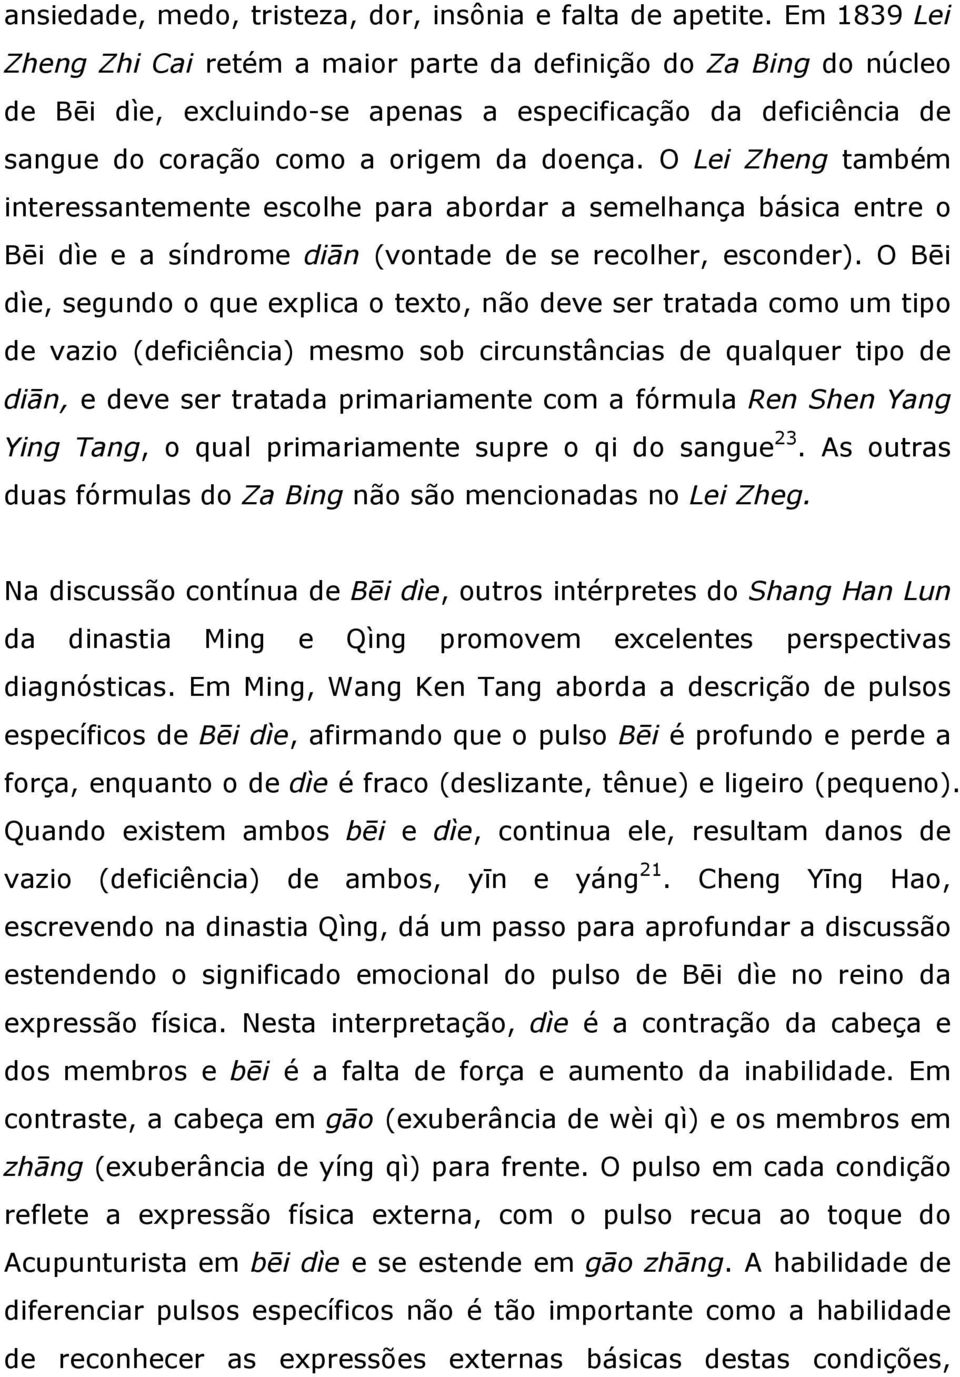 O Lei Zheng também interessantemente escolhe para abordar a semelhança básica entre o Bēi dìe e a síndrome diān (vontade de se recolher, esconder).